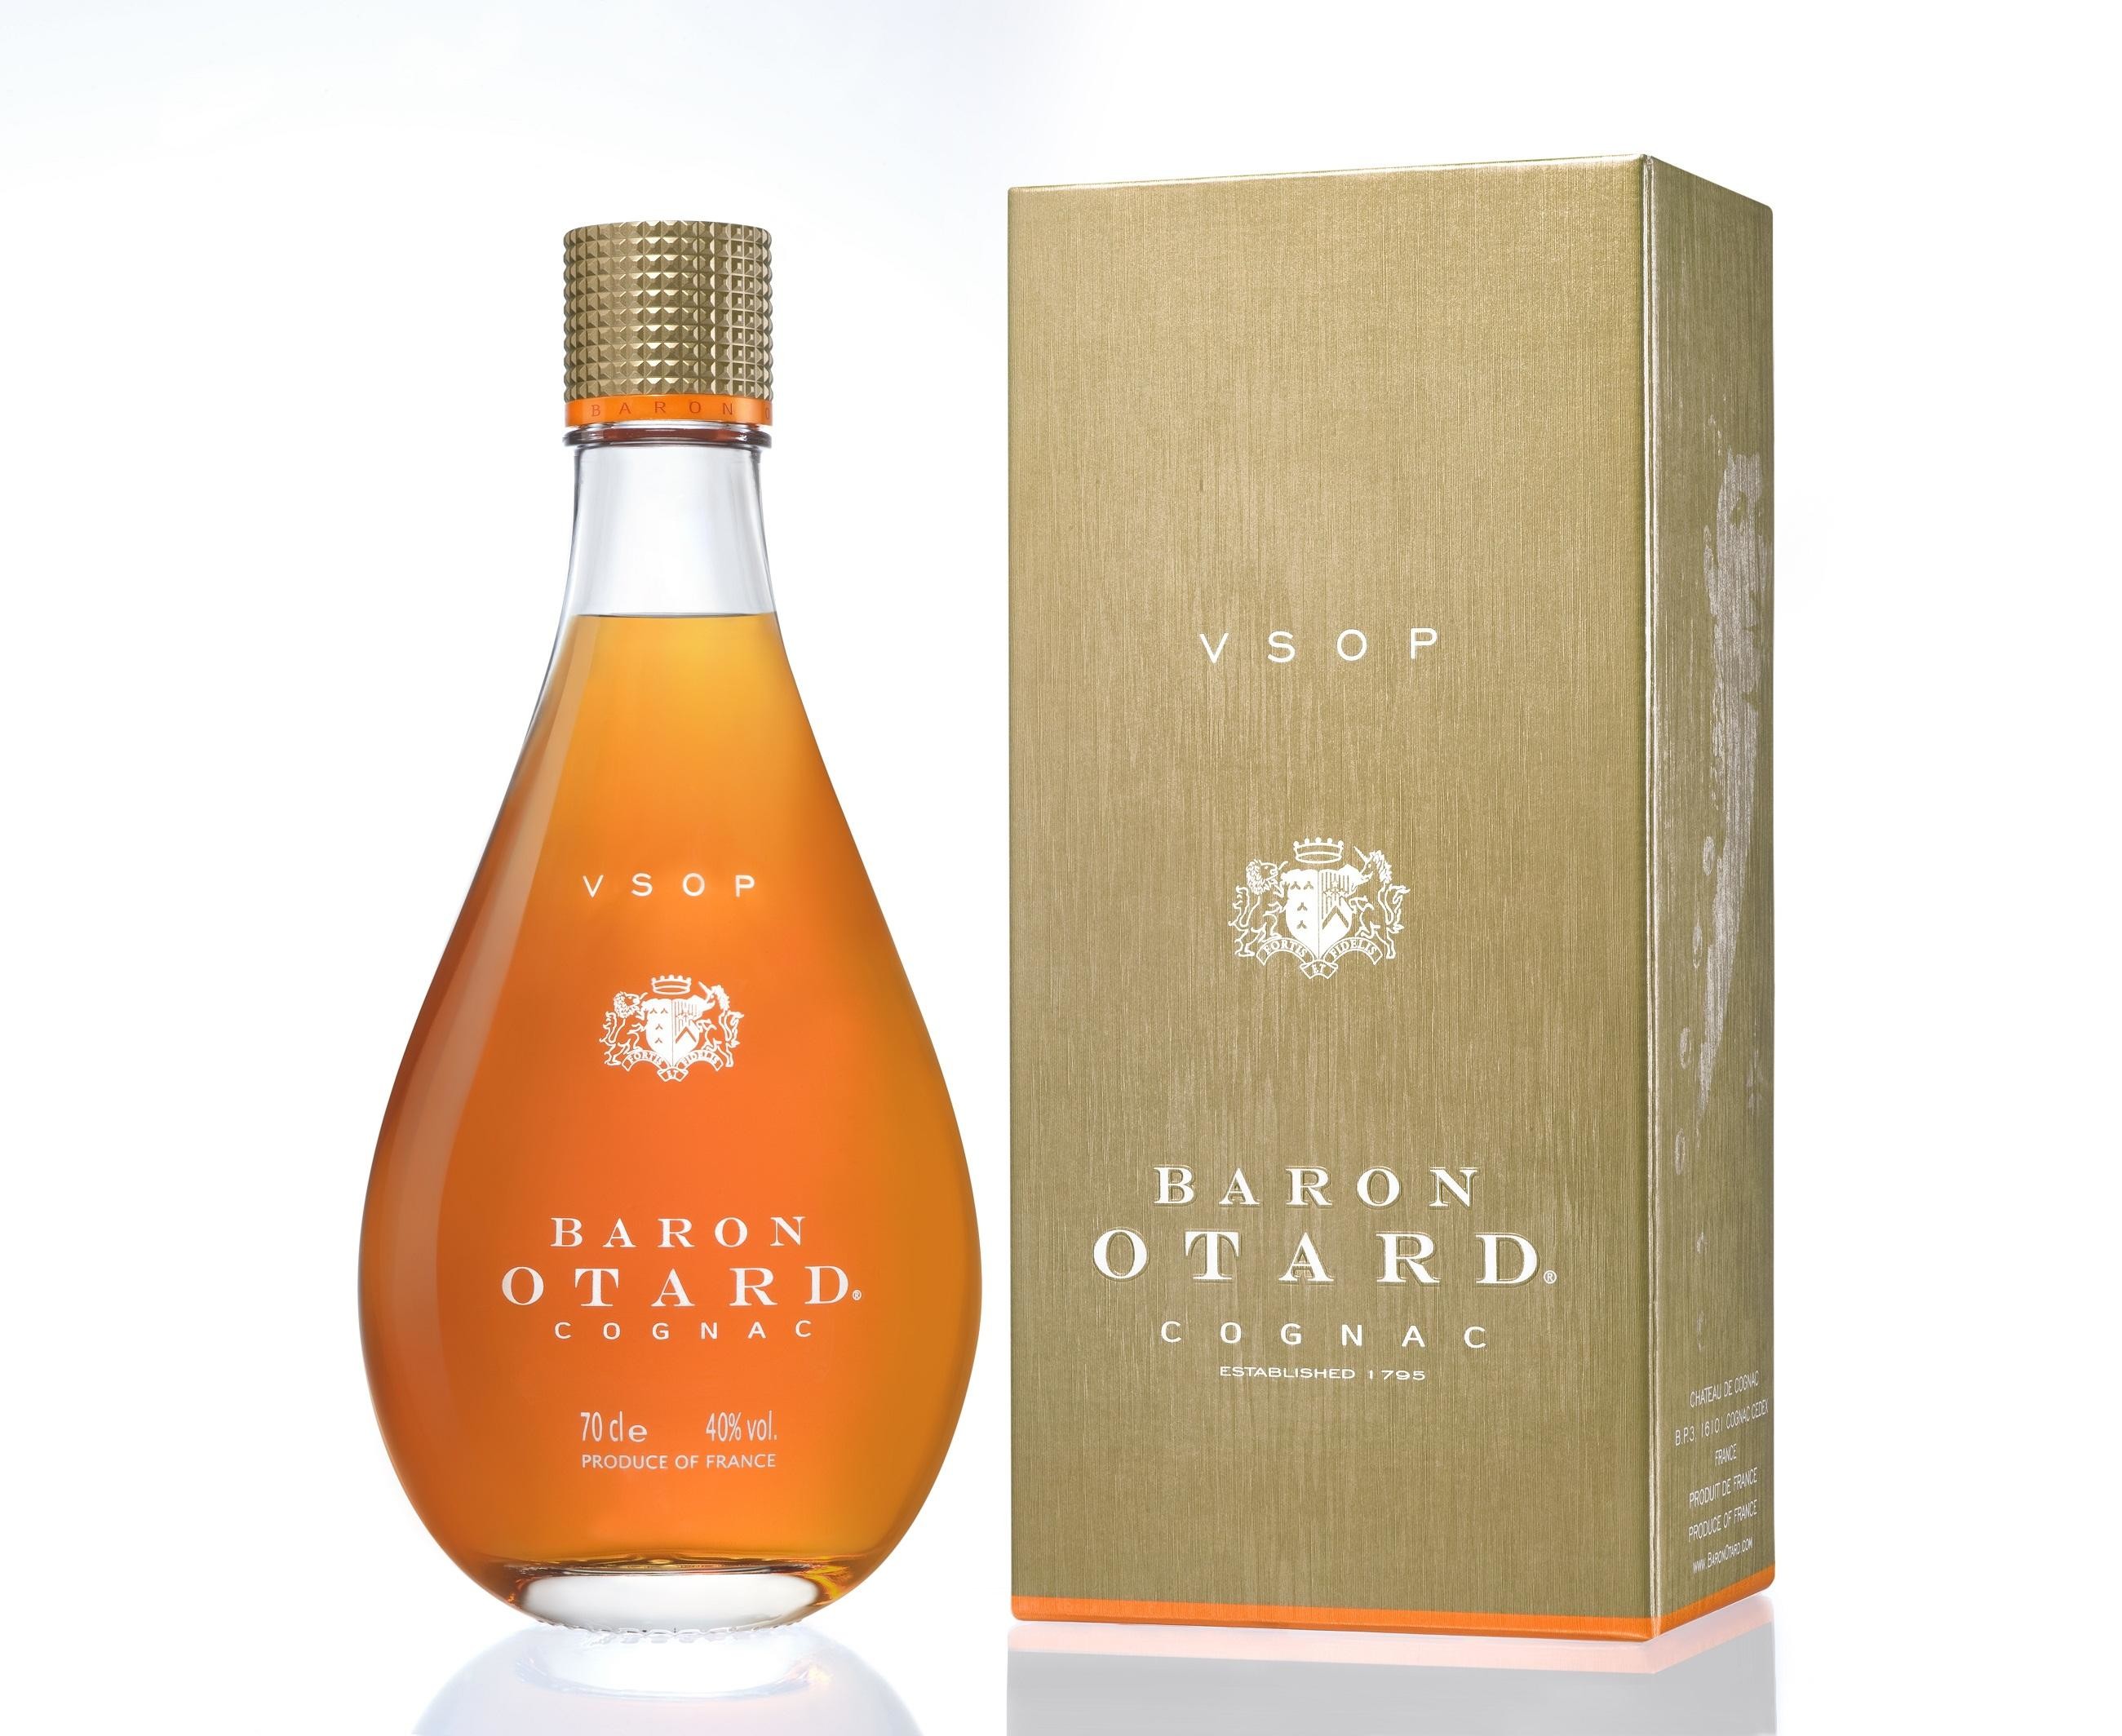 Cognac Otard V.S.O.P. 70cl 40%